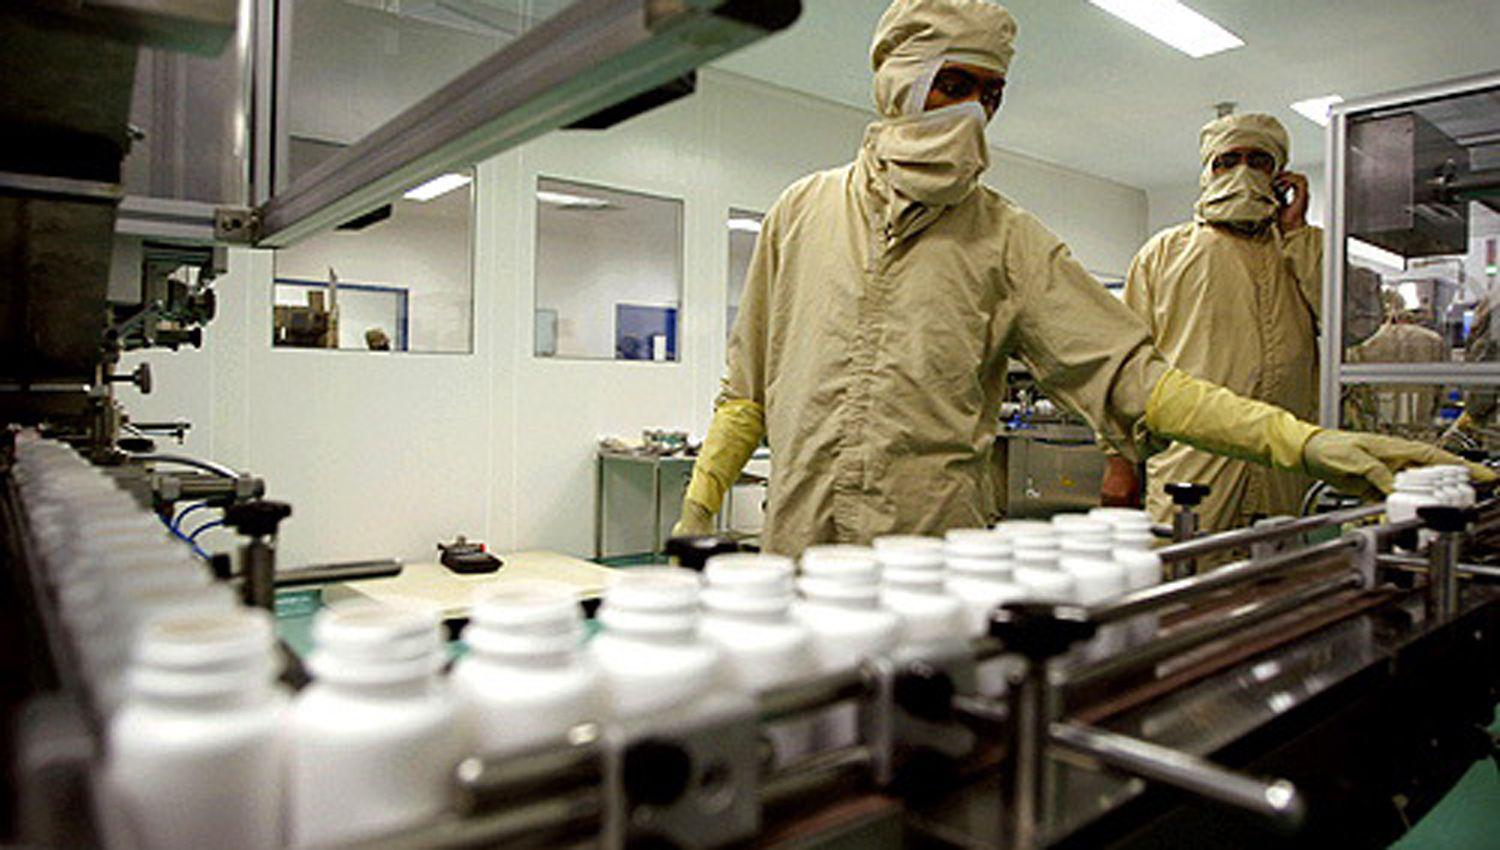 La industria farmaceacuteutica en Argentina invertiraacute US 740 millones para potenciar la investigacioacuten